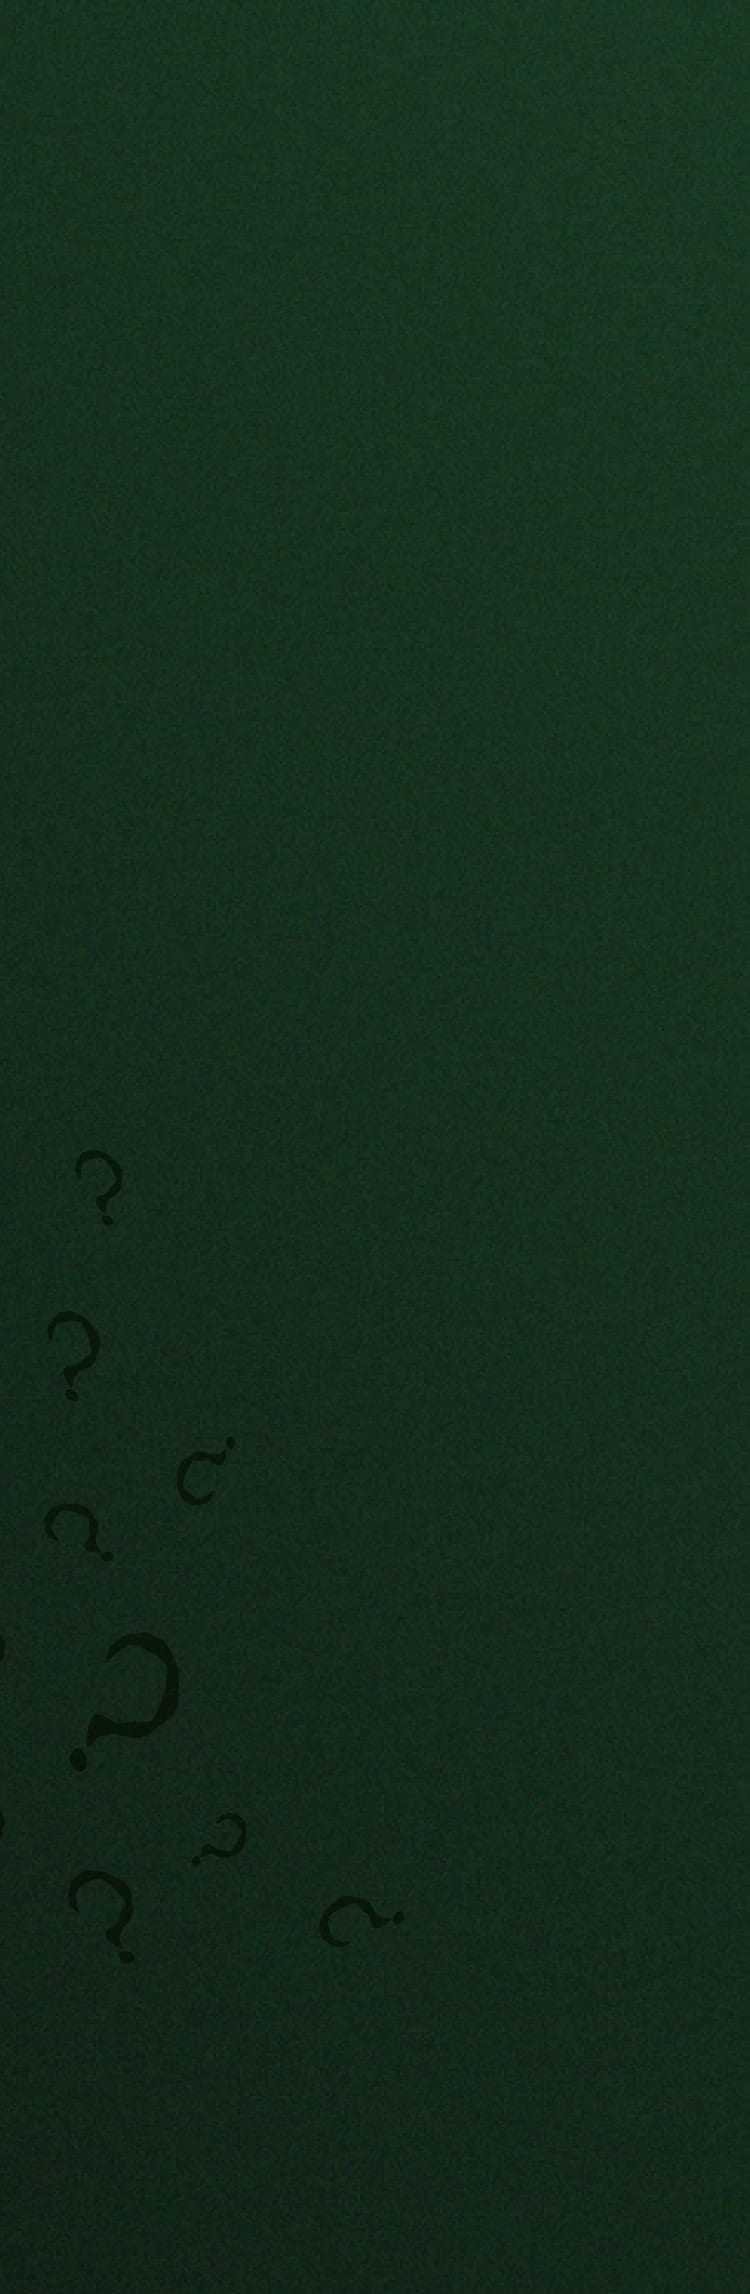 Uno sfondo verde con dettagli di punti interrogativi e l’orologio Batman x Fossil Riddler. 